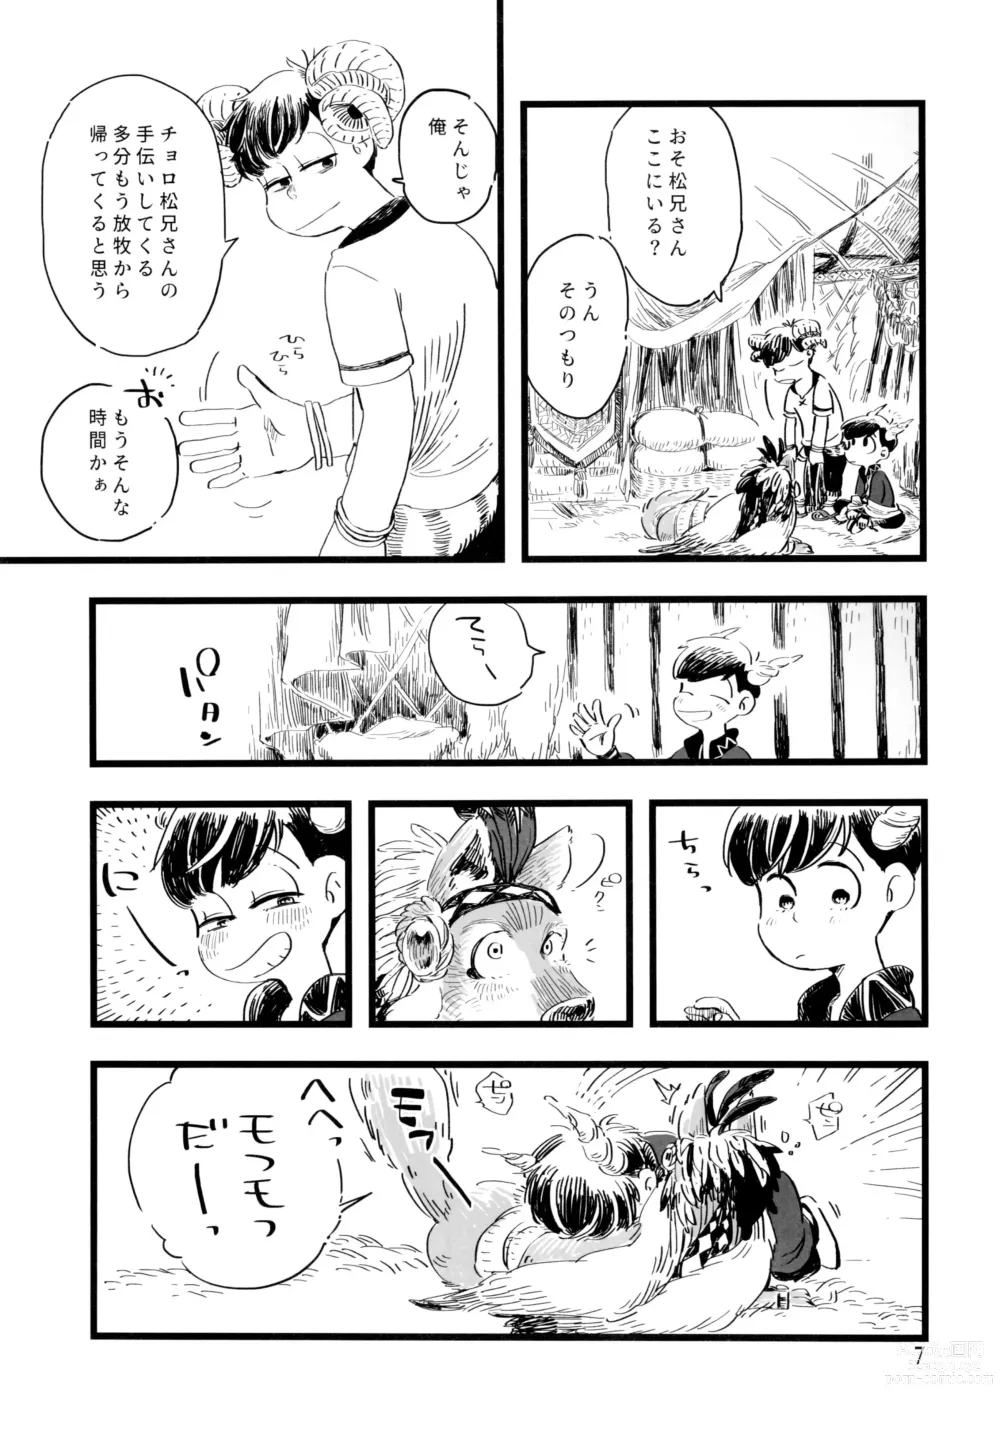 Page 7 of doujinshi Jinro and Tsuno Minzoku